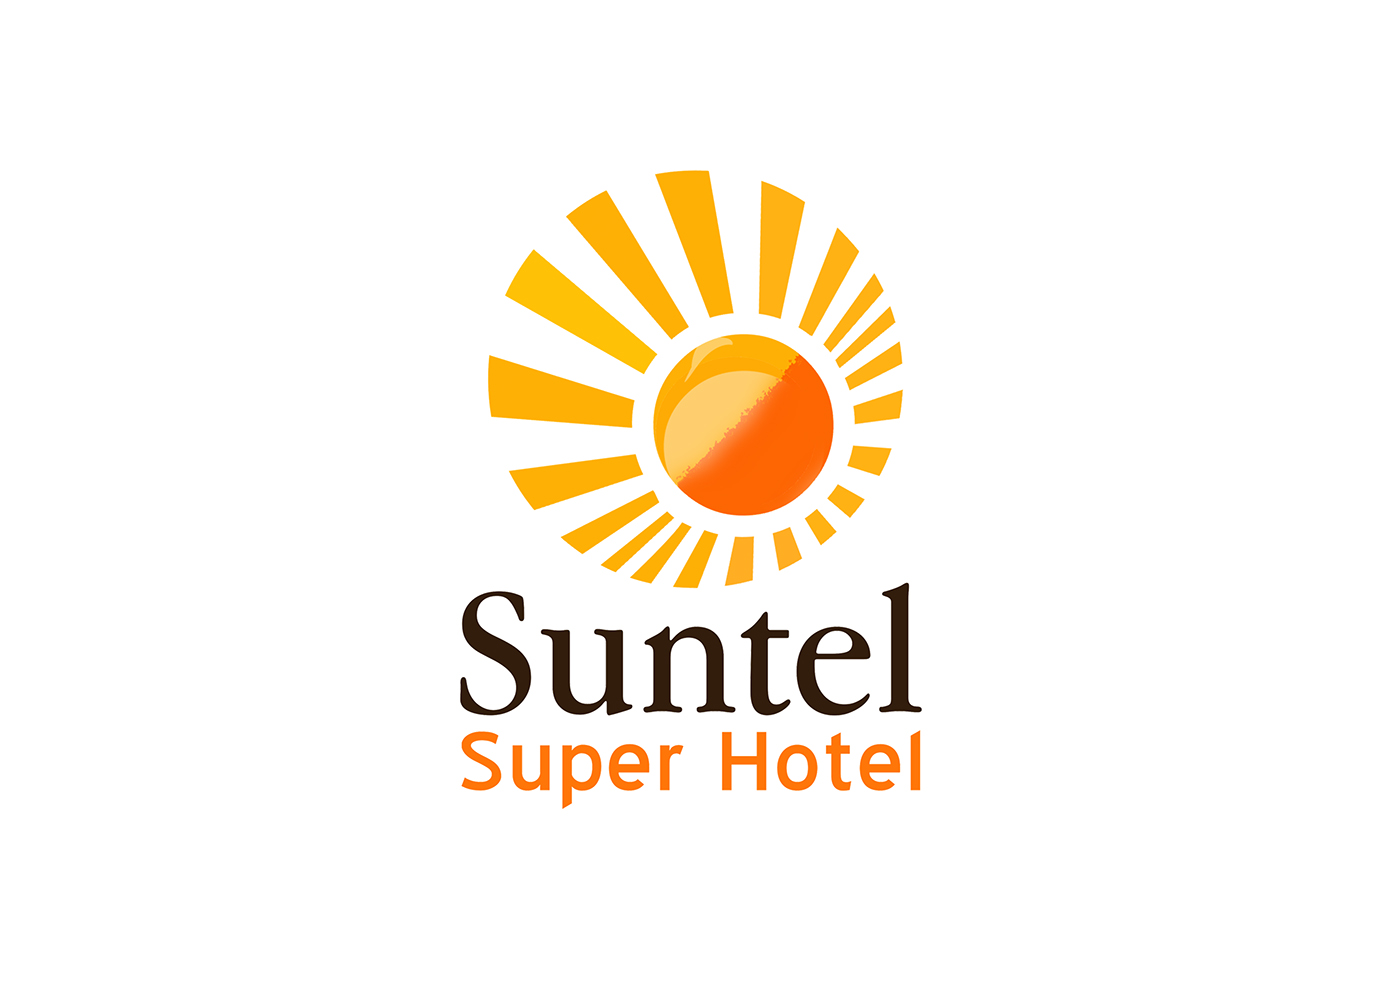 sunel sun + hotel hotel logo